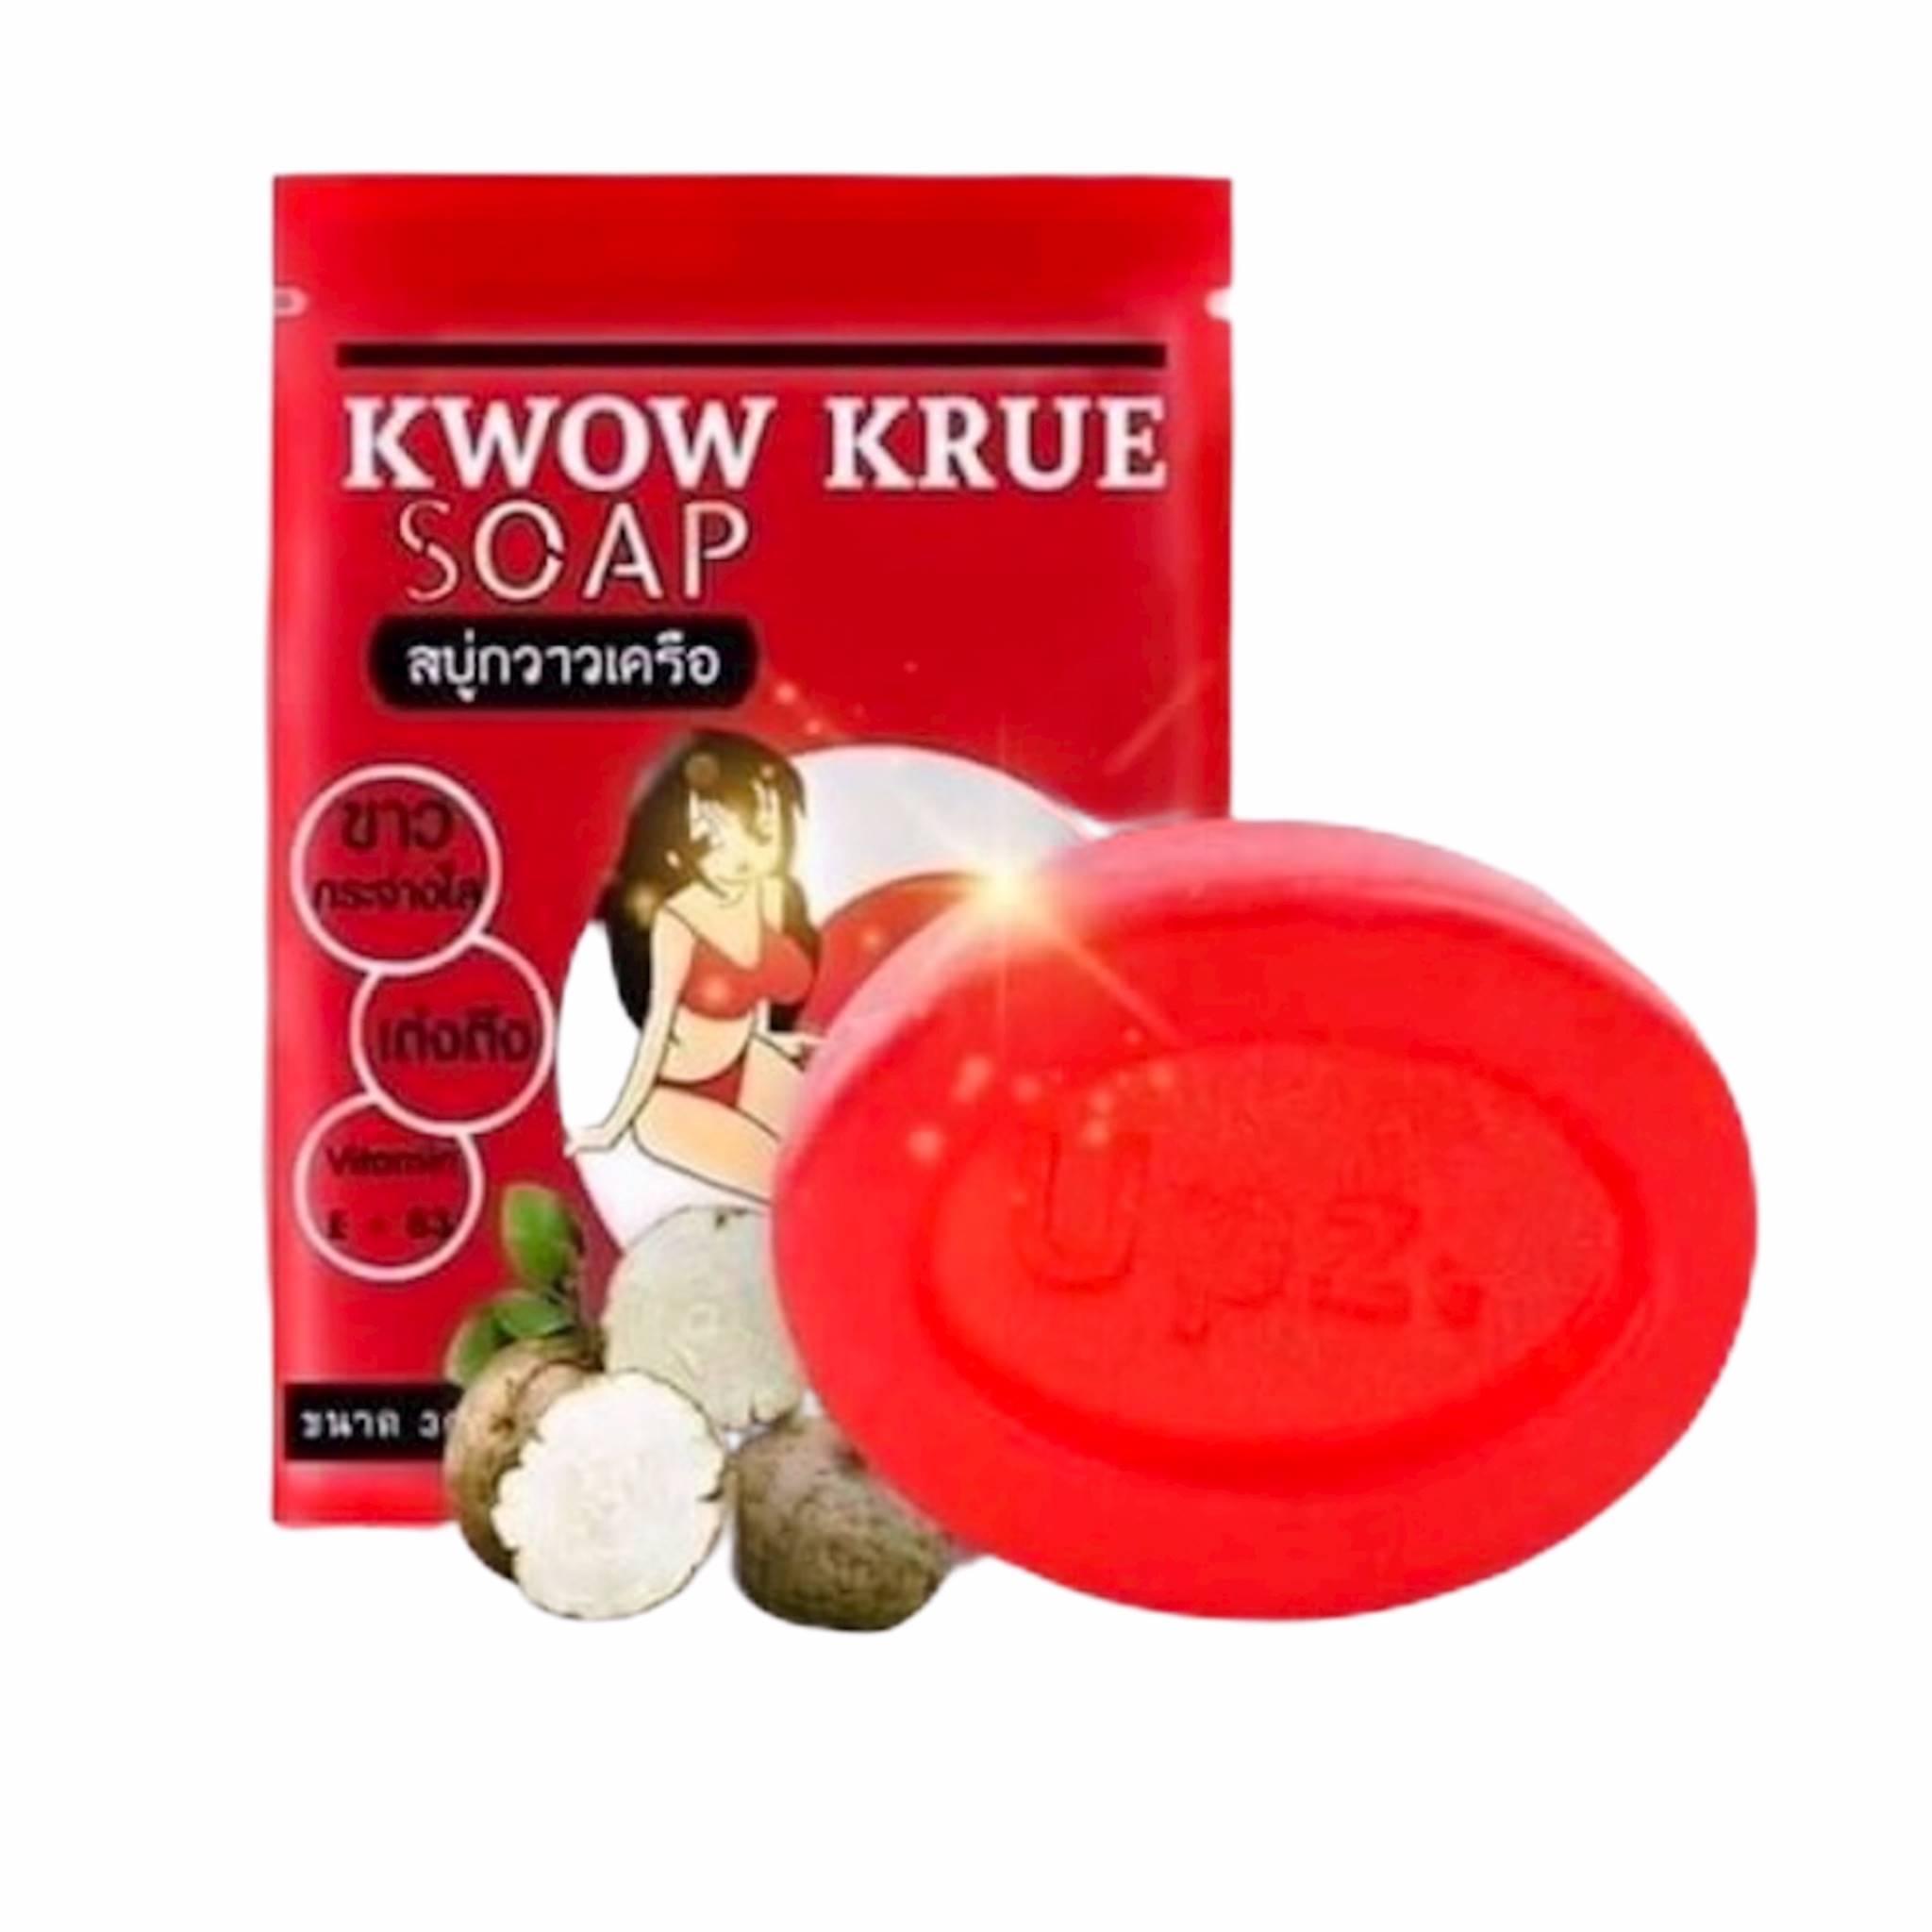 K Wow Krue Soap สบู่อัพไซส์ สบู่กวาวเครือ ขนาด 30 กรัม (1 ก้อน )